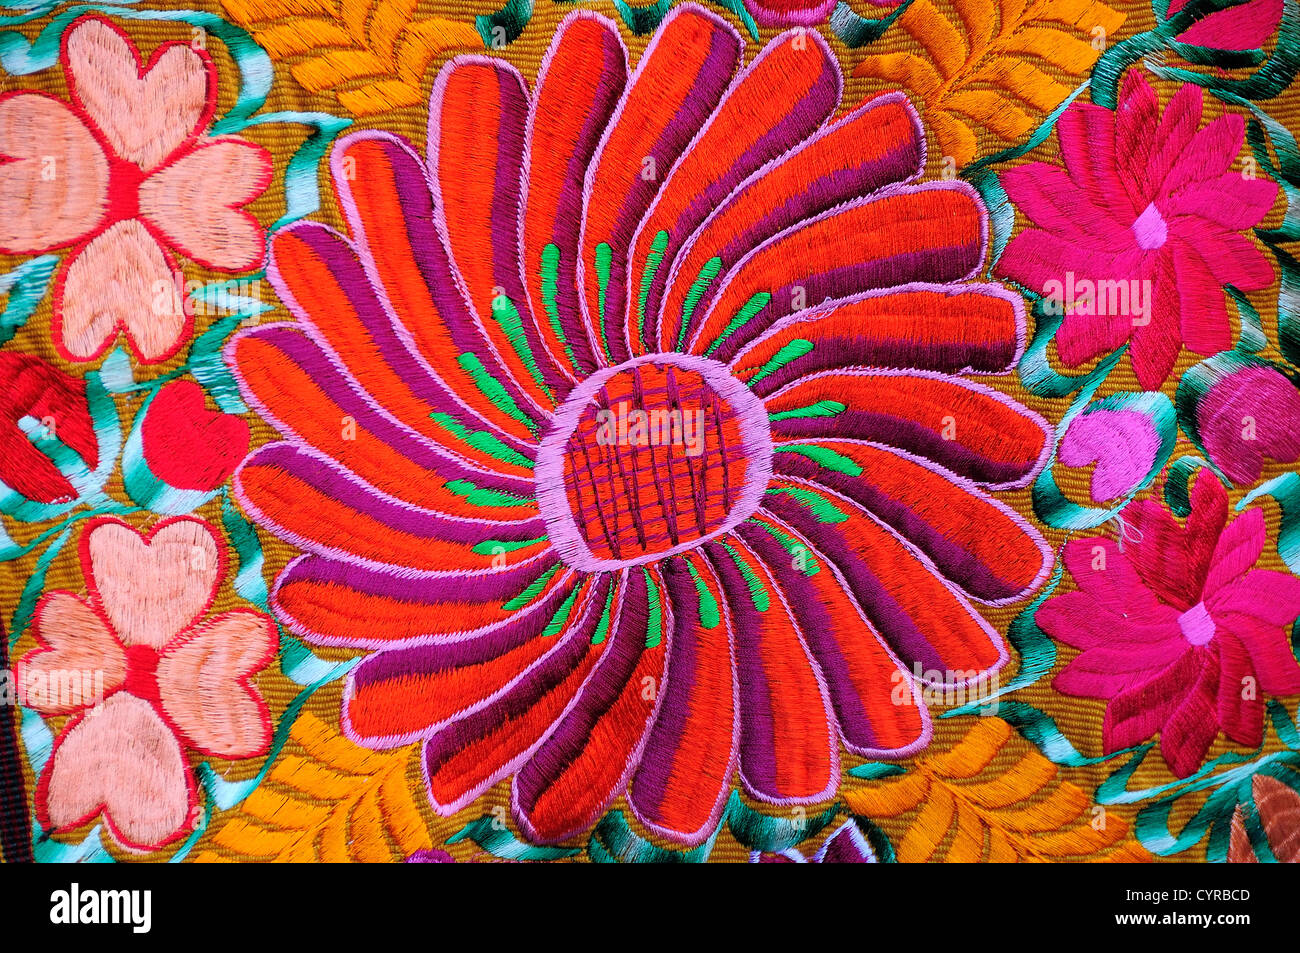 Le Mexique, Bajio, San Miguel de Allende, textiles brodés de couleurs vives boutique arts étendus dehors avec flower design. Banque D'Images